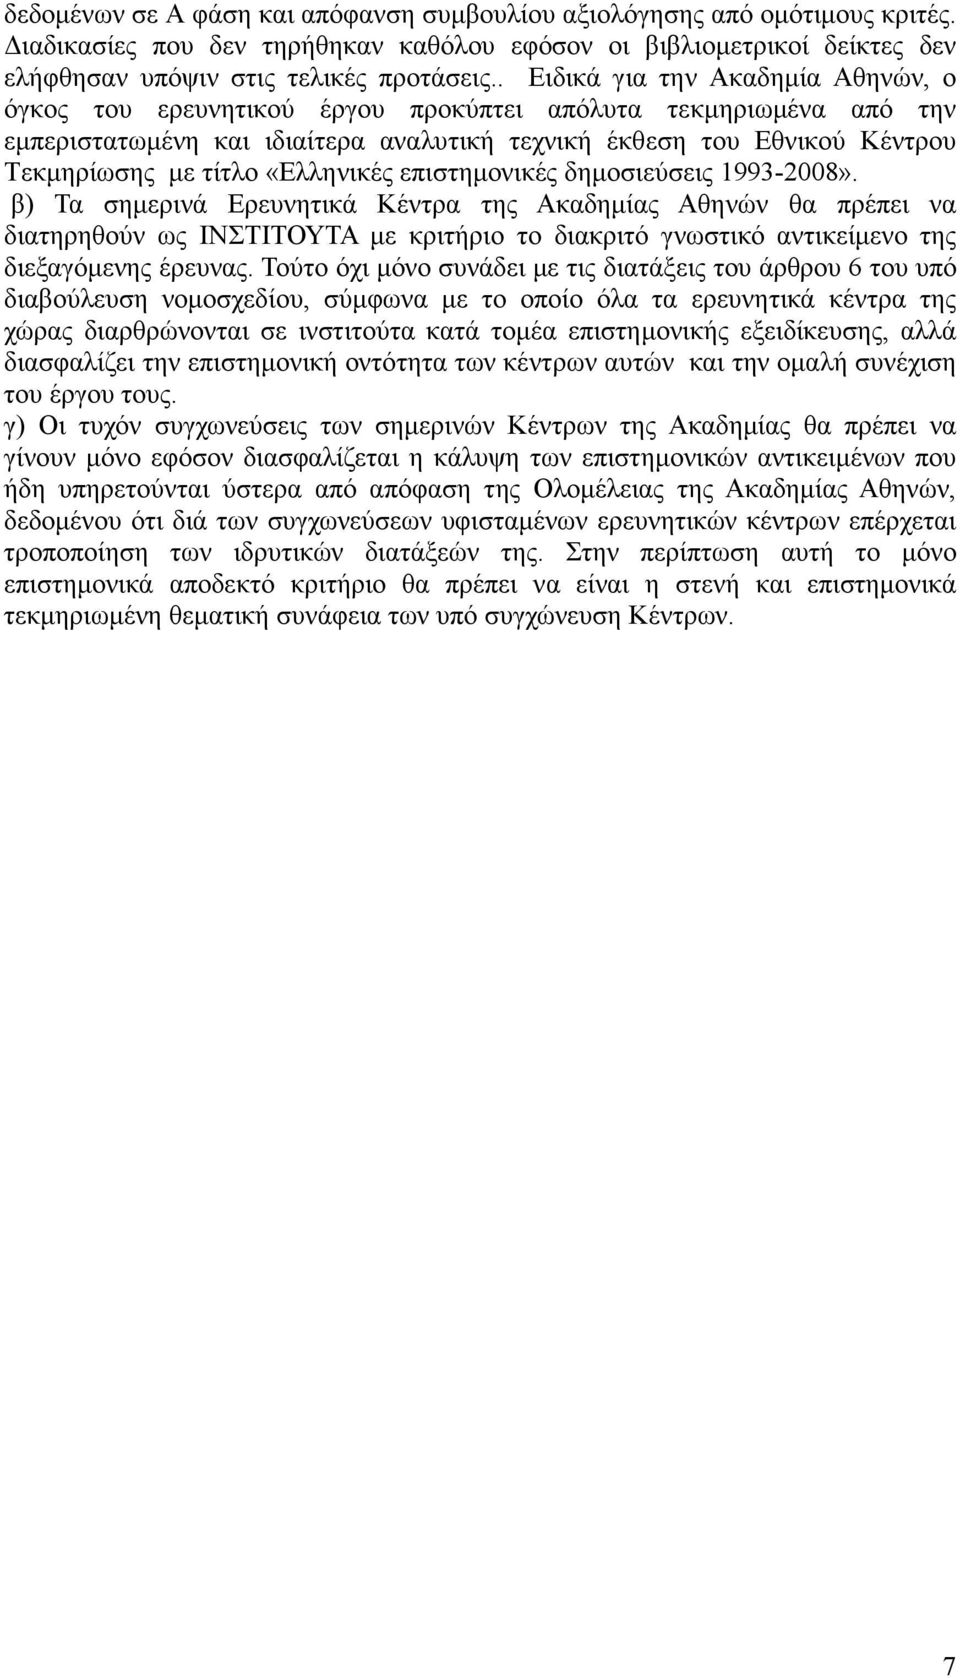 «Ελληνικές επιστηµονικές δηµοσιεύσεις 1993-2008».